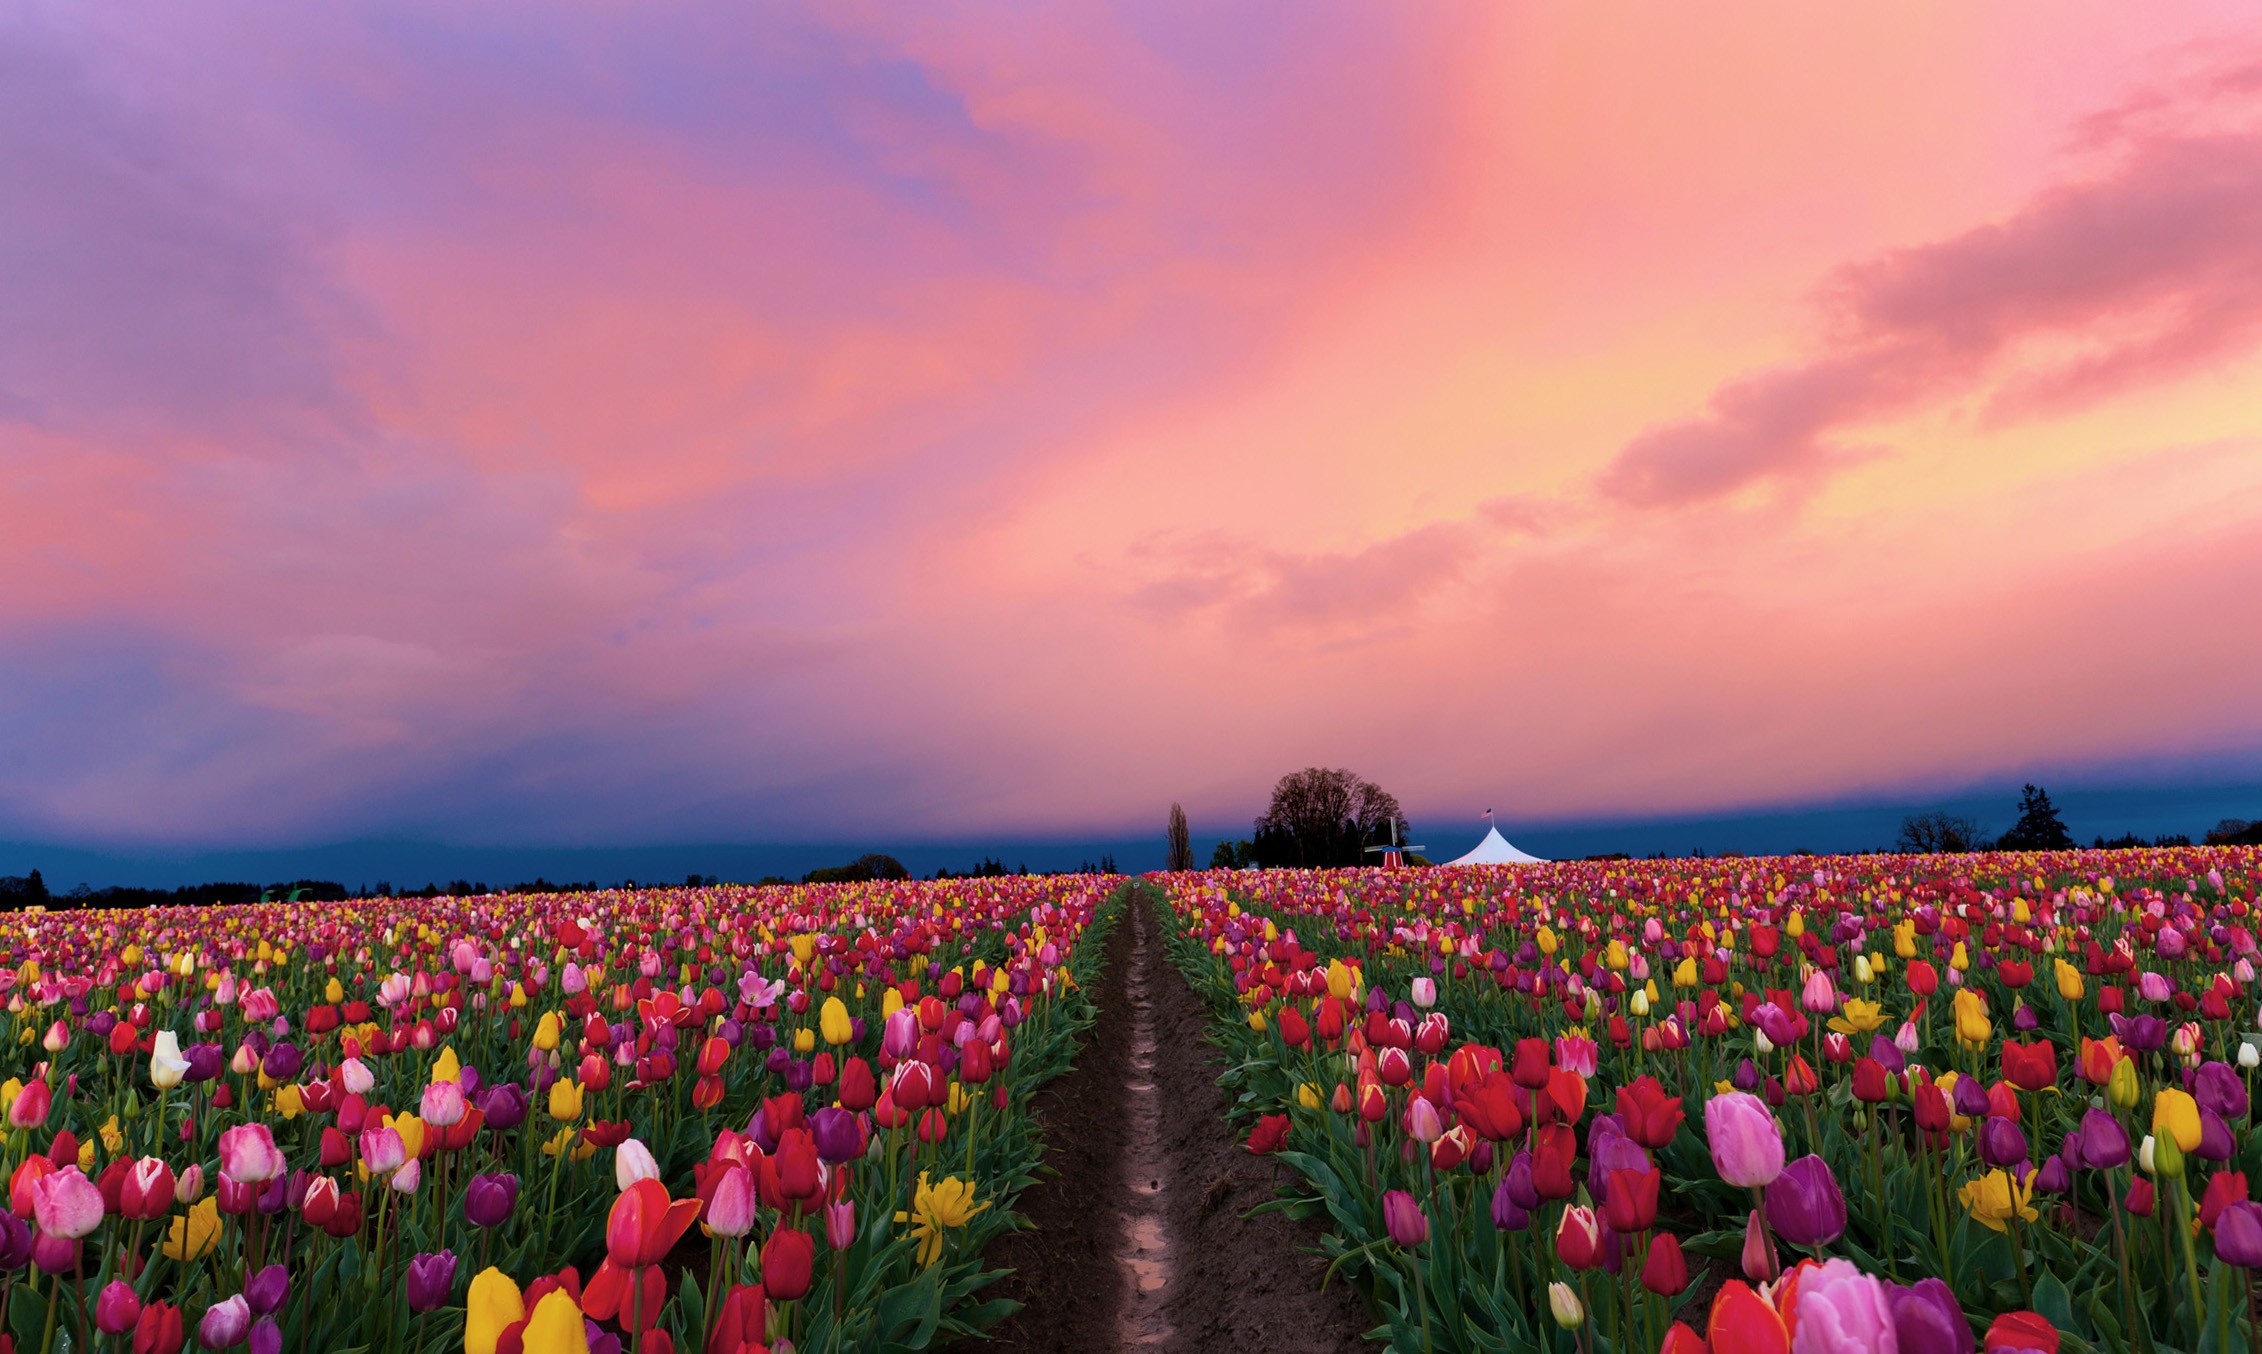 nature wallpaper hd for desktop free download,flower,sky,tulip,plant,natural landscape